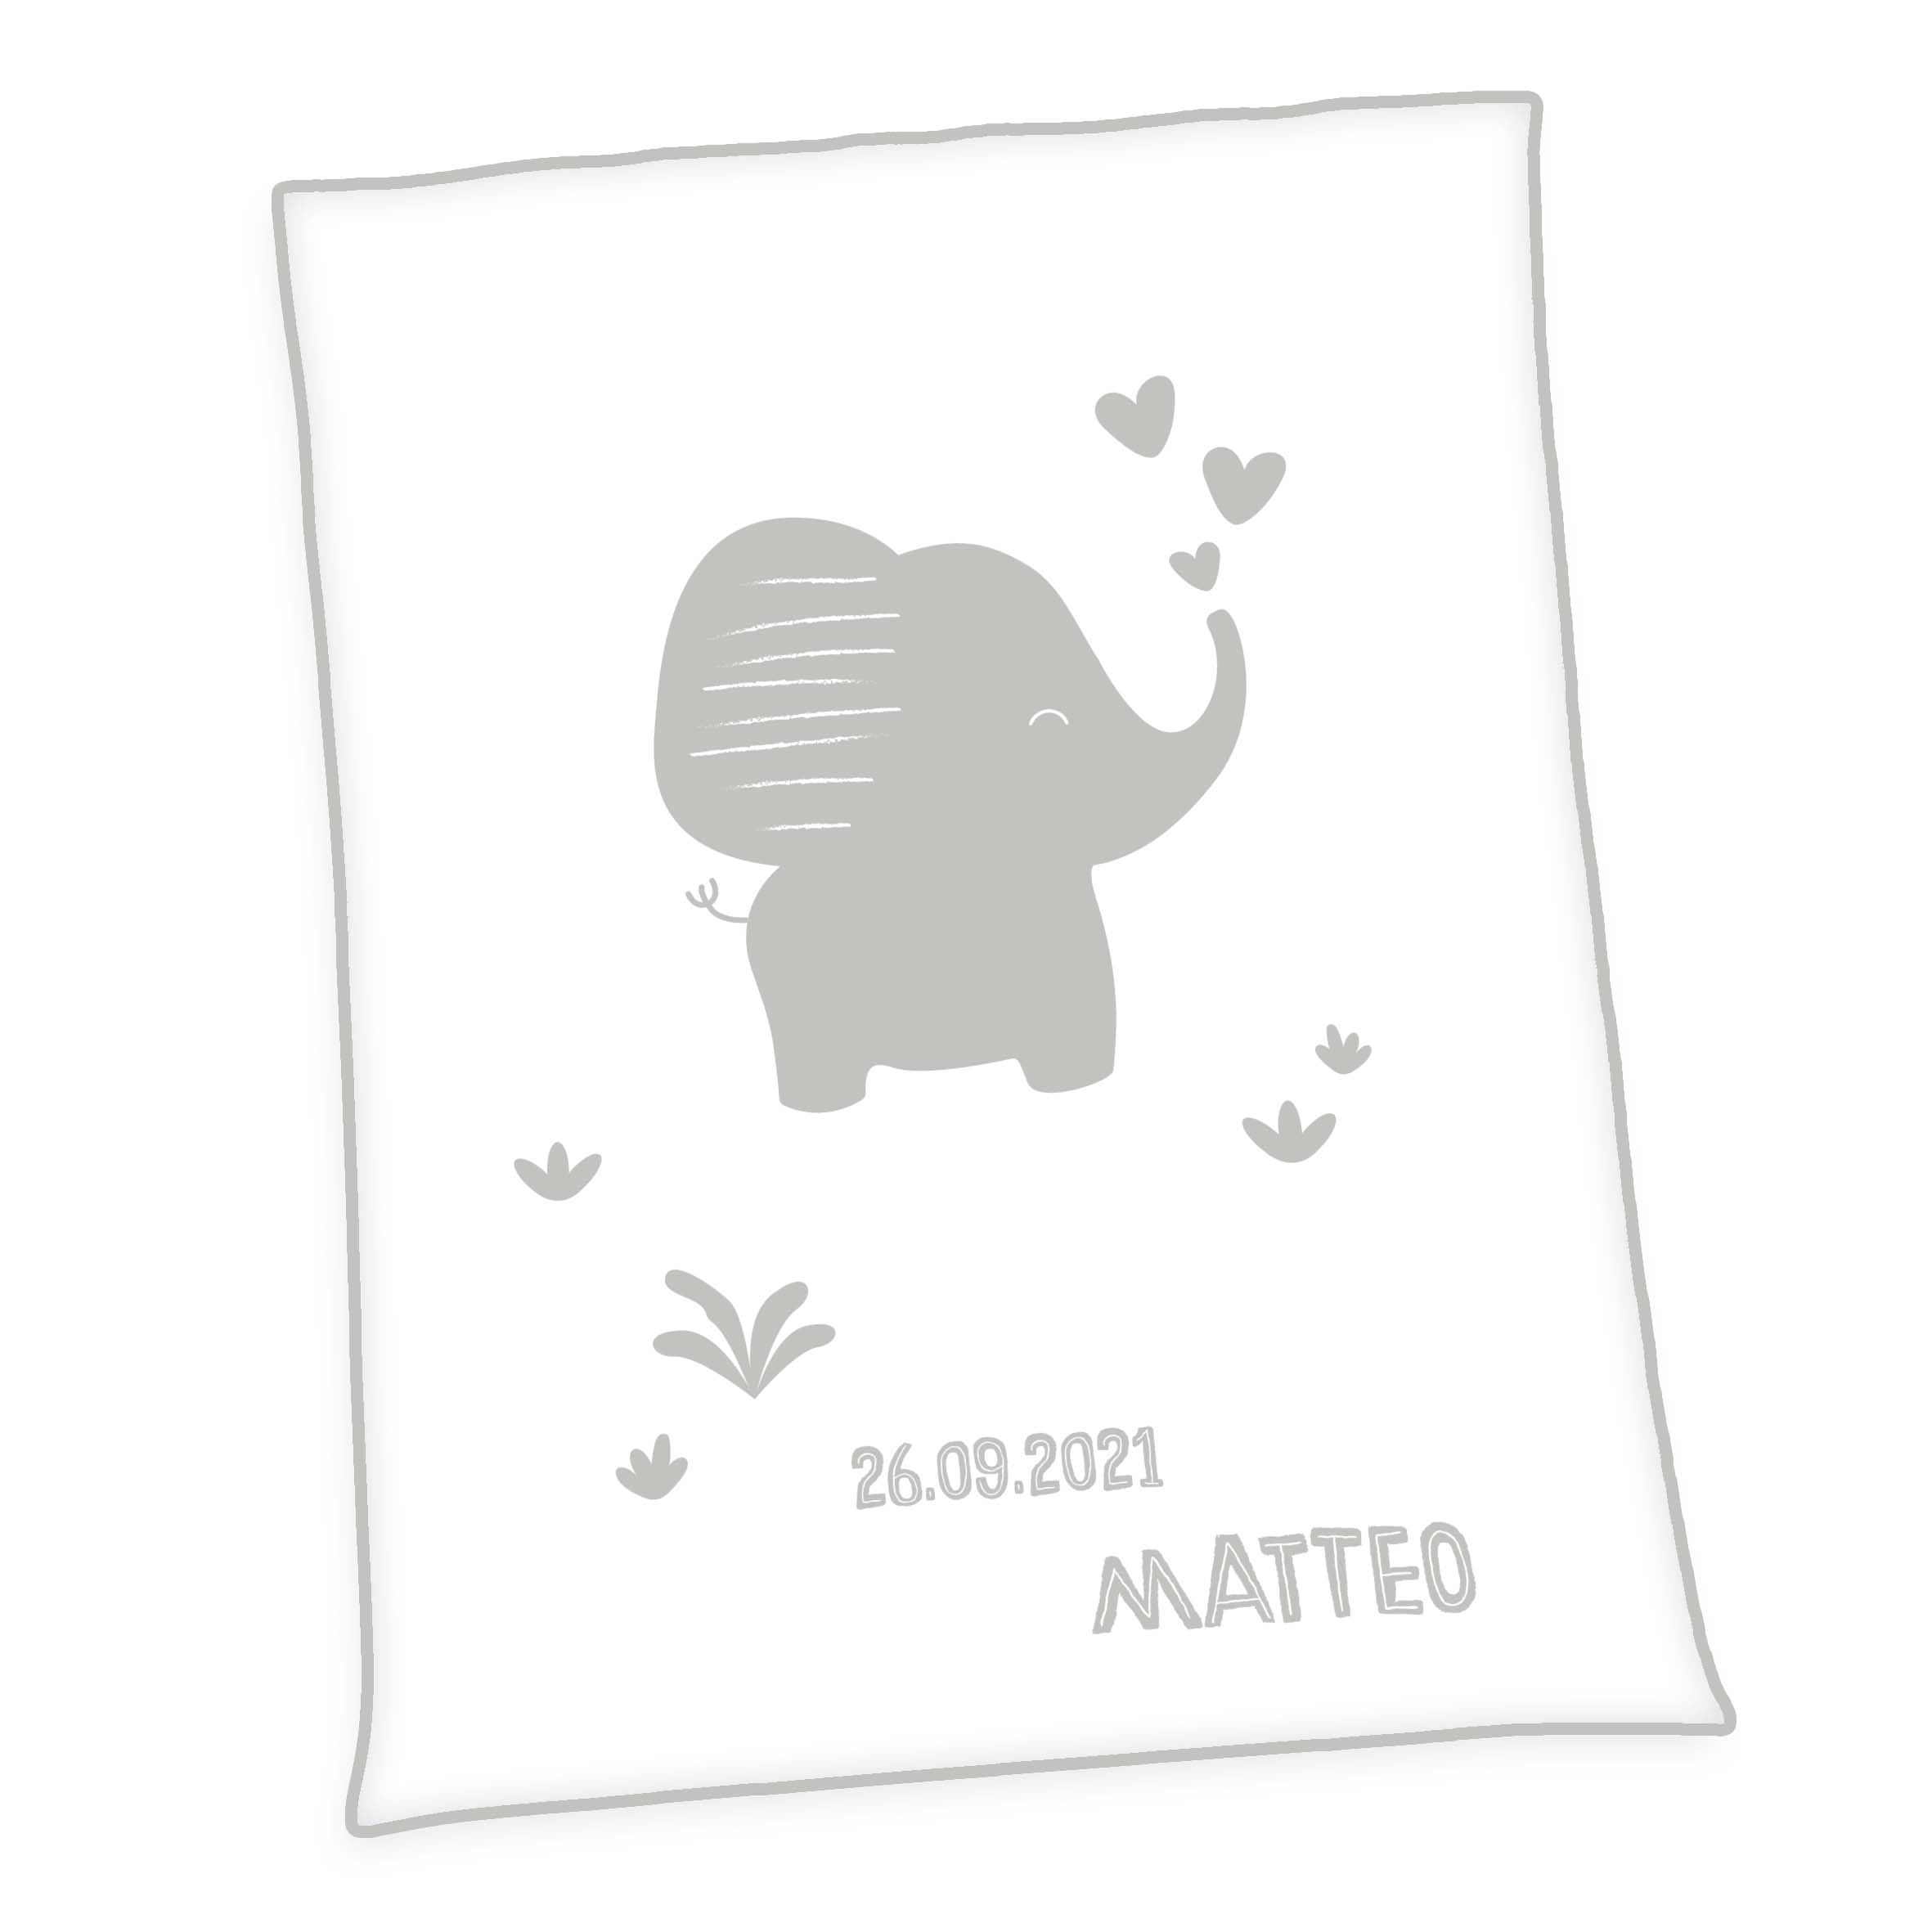 Produktbild Personalisierte Baby Kuscheldecke Elefant Unicade hellgrau